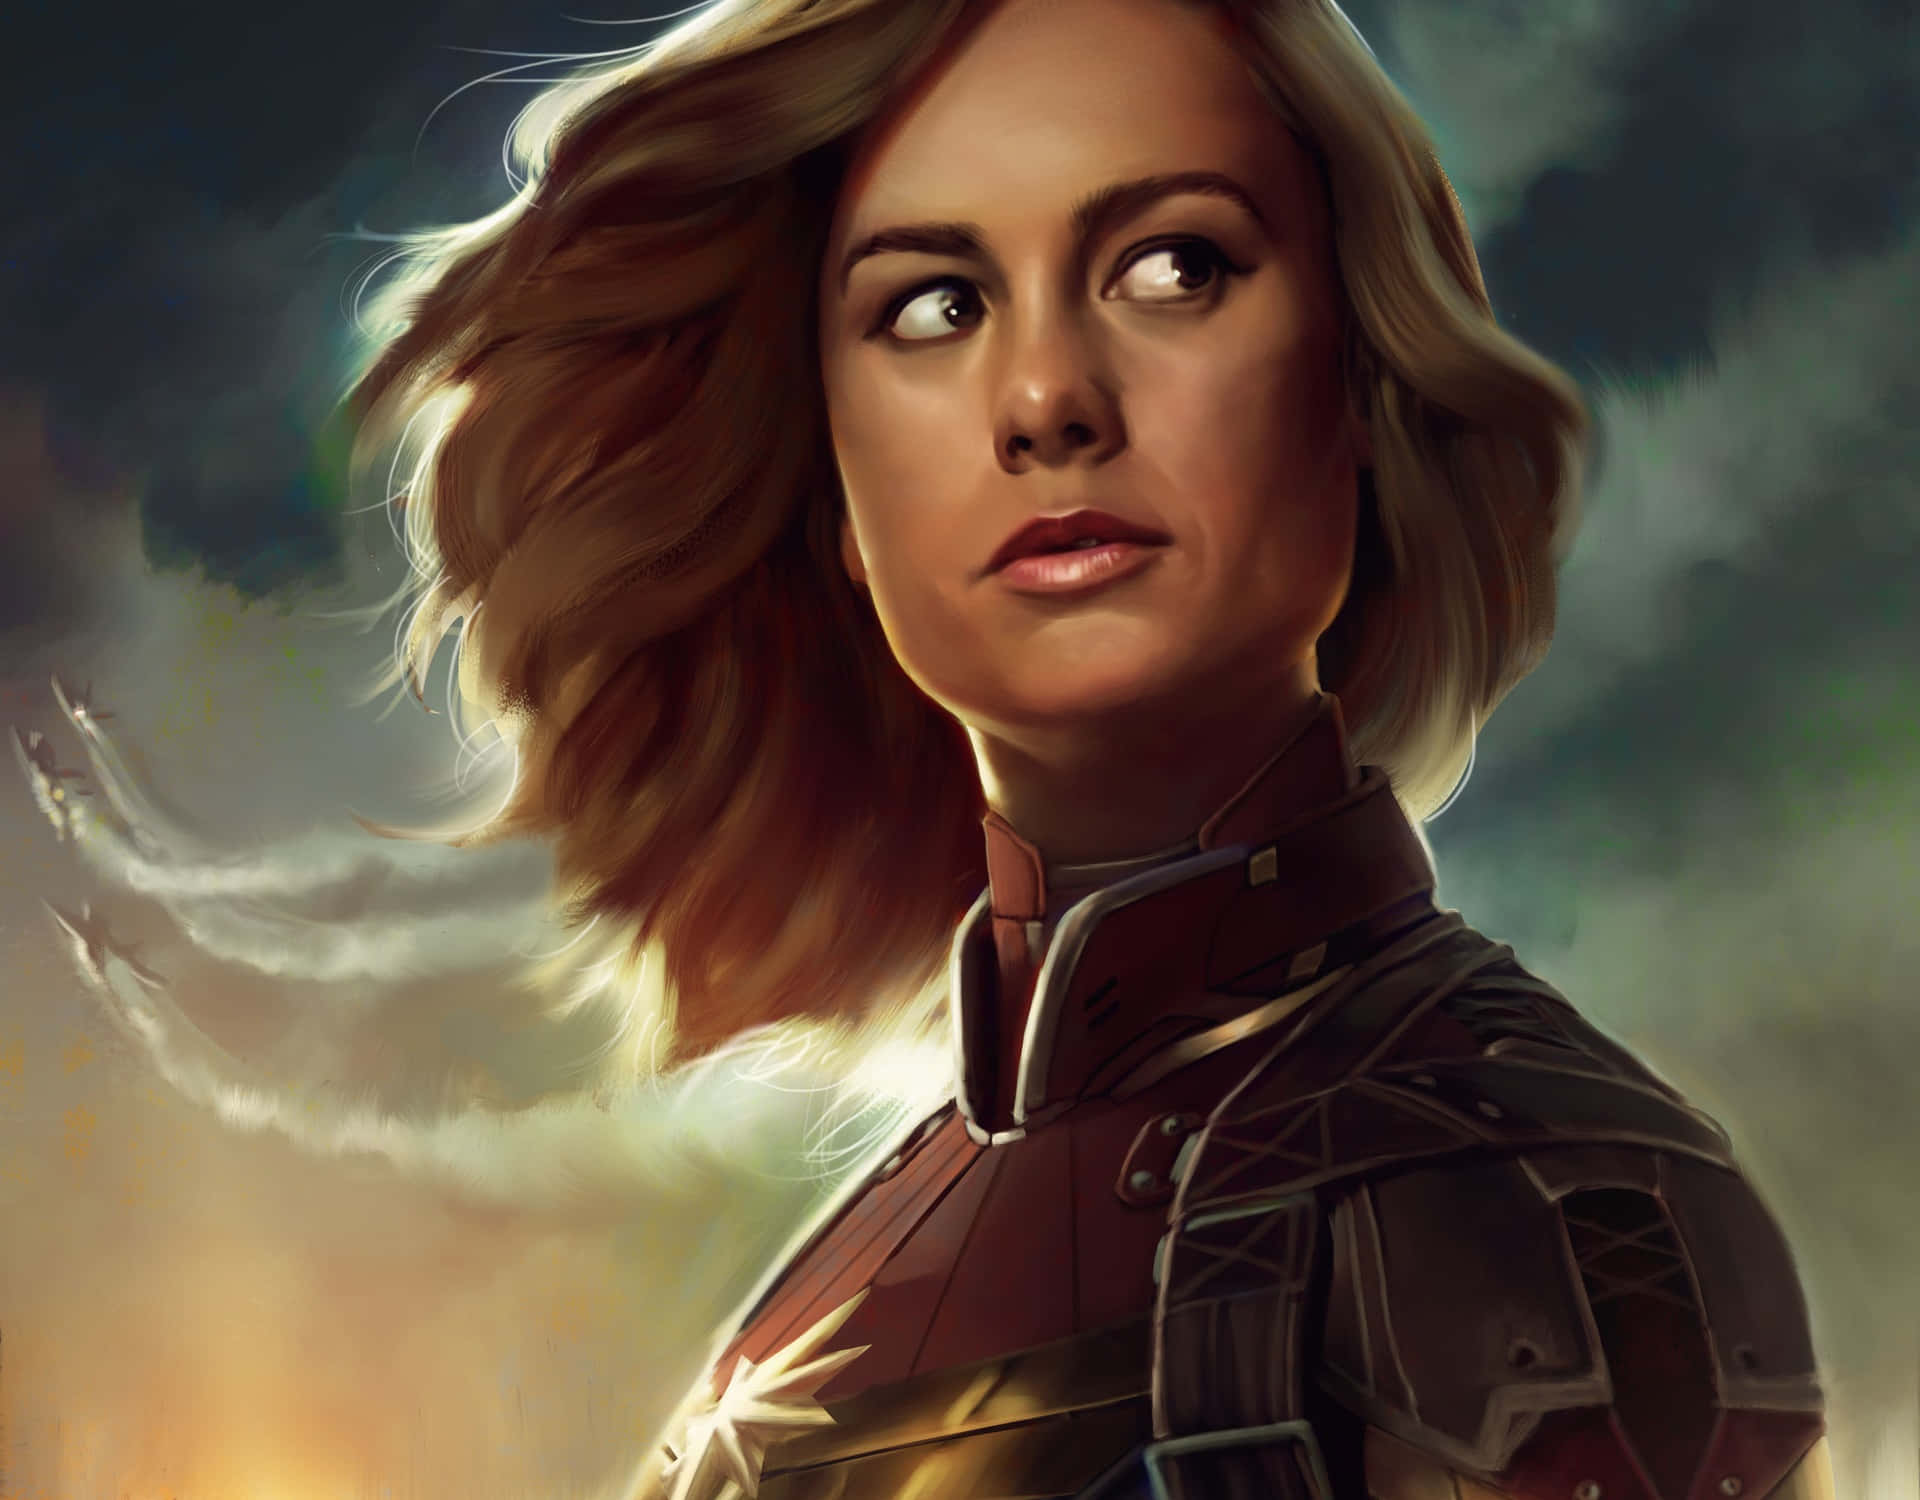 Brie Larson in Marvel's "Captain Marvel" Wallpaper